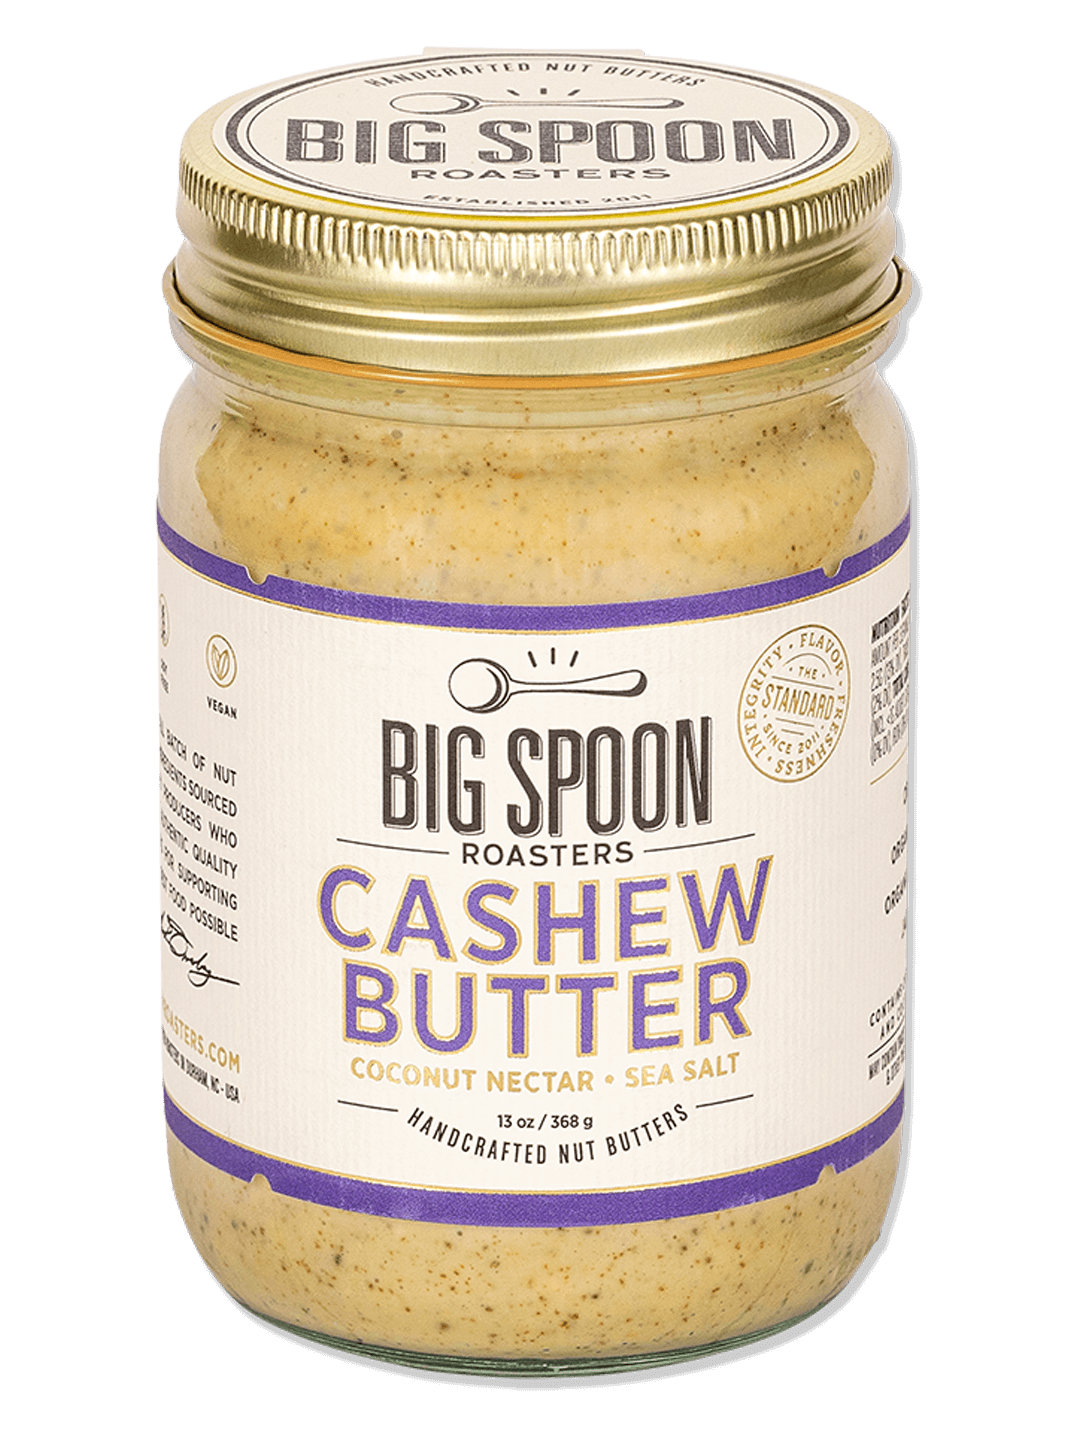 13oz jar of Cashew Butter